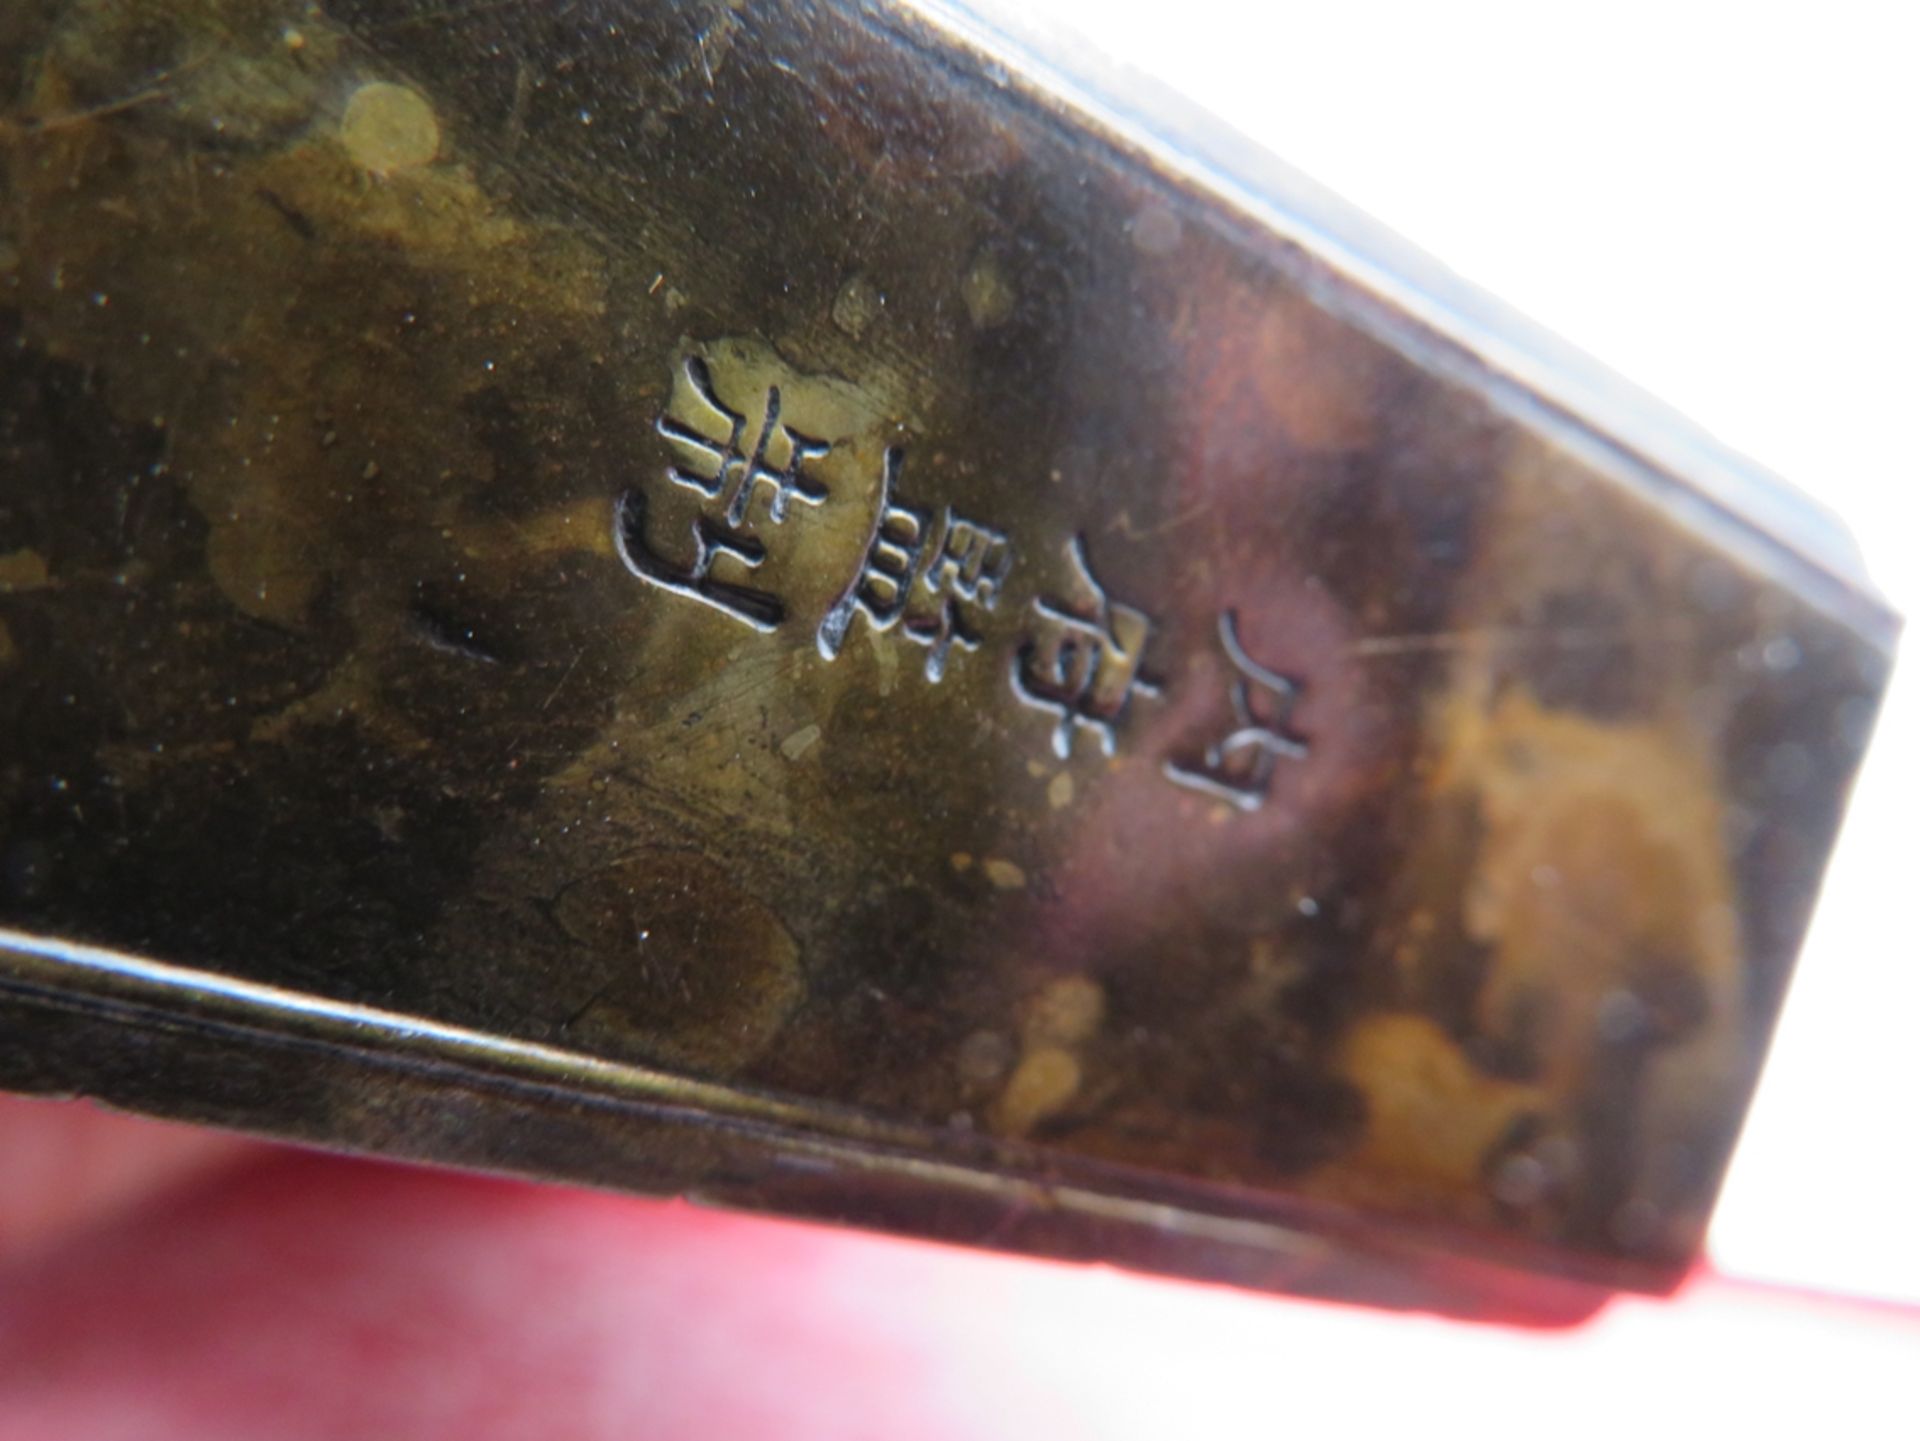 Snuffbottle, China, Messing reich reliefiert, Drachen mit 5 Krallen, sign., 10,5 x 5 x 2,5 cm. - Image 3 of 3